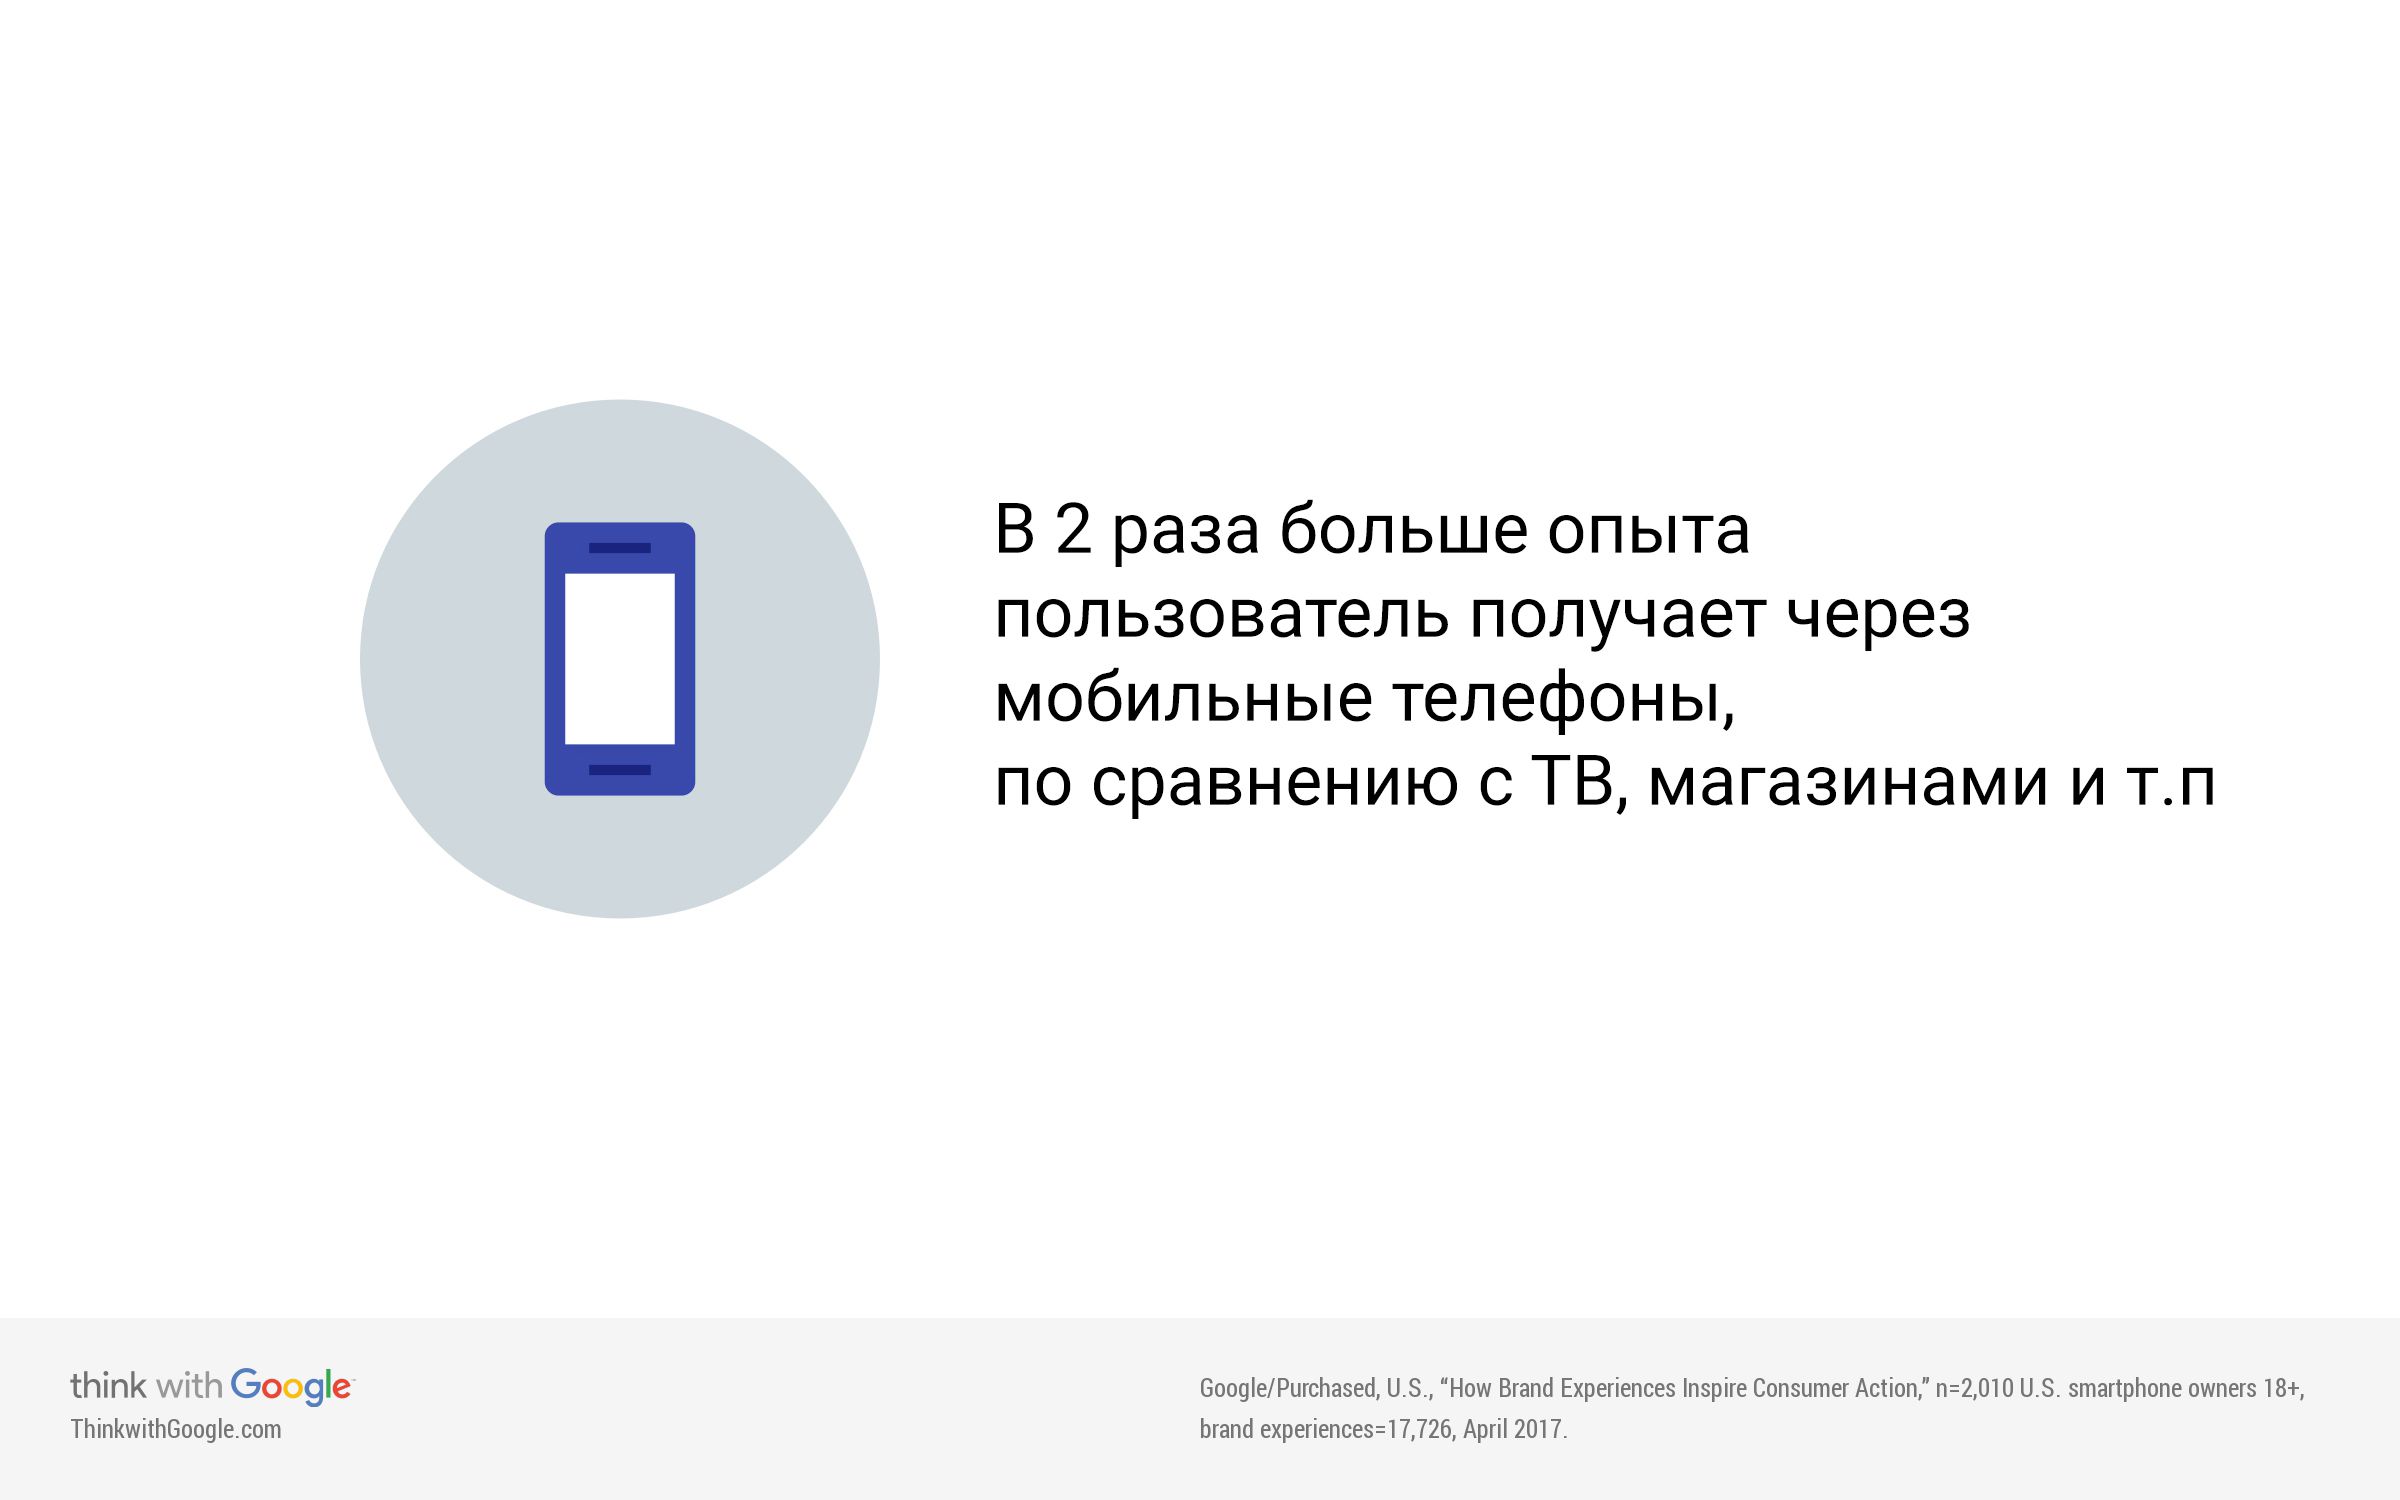 consumer-mobile-brand-experience-1.jpg